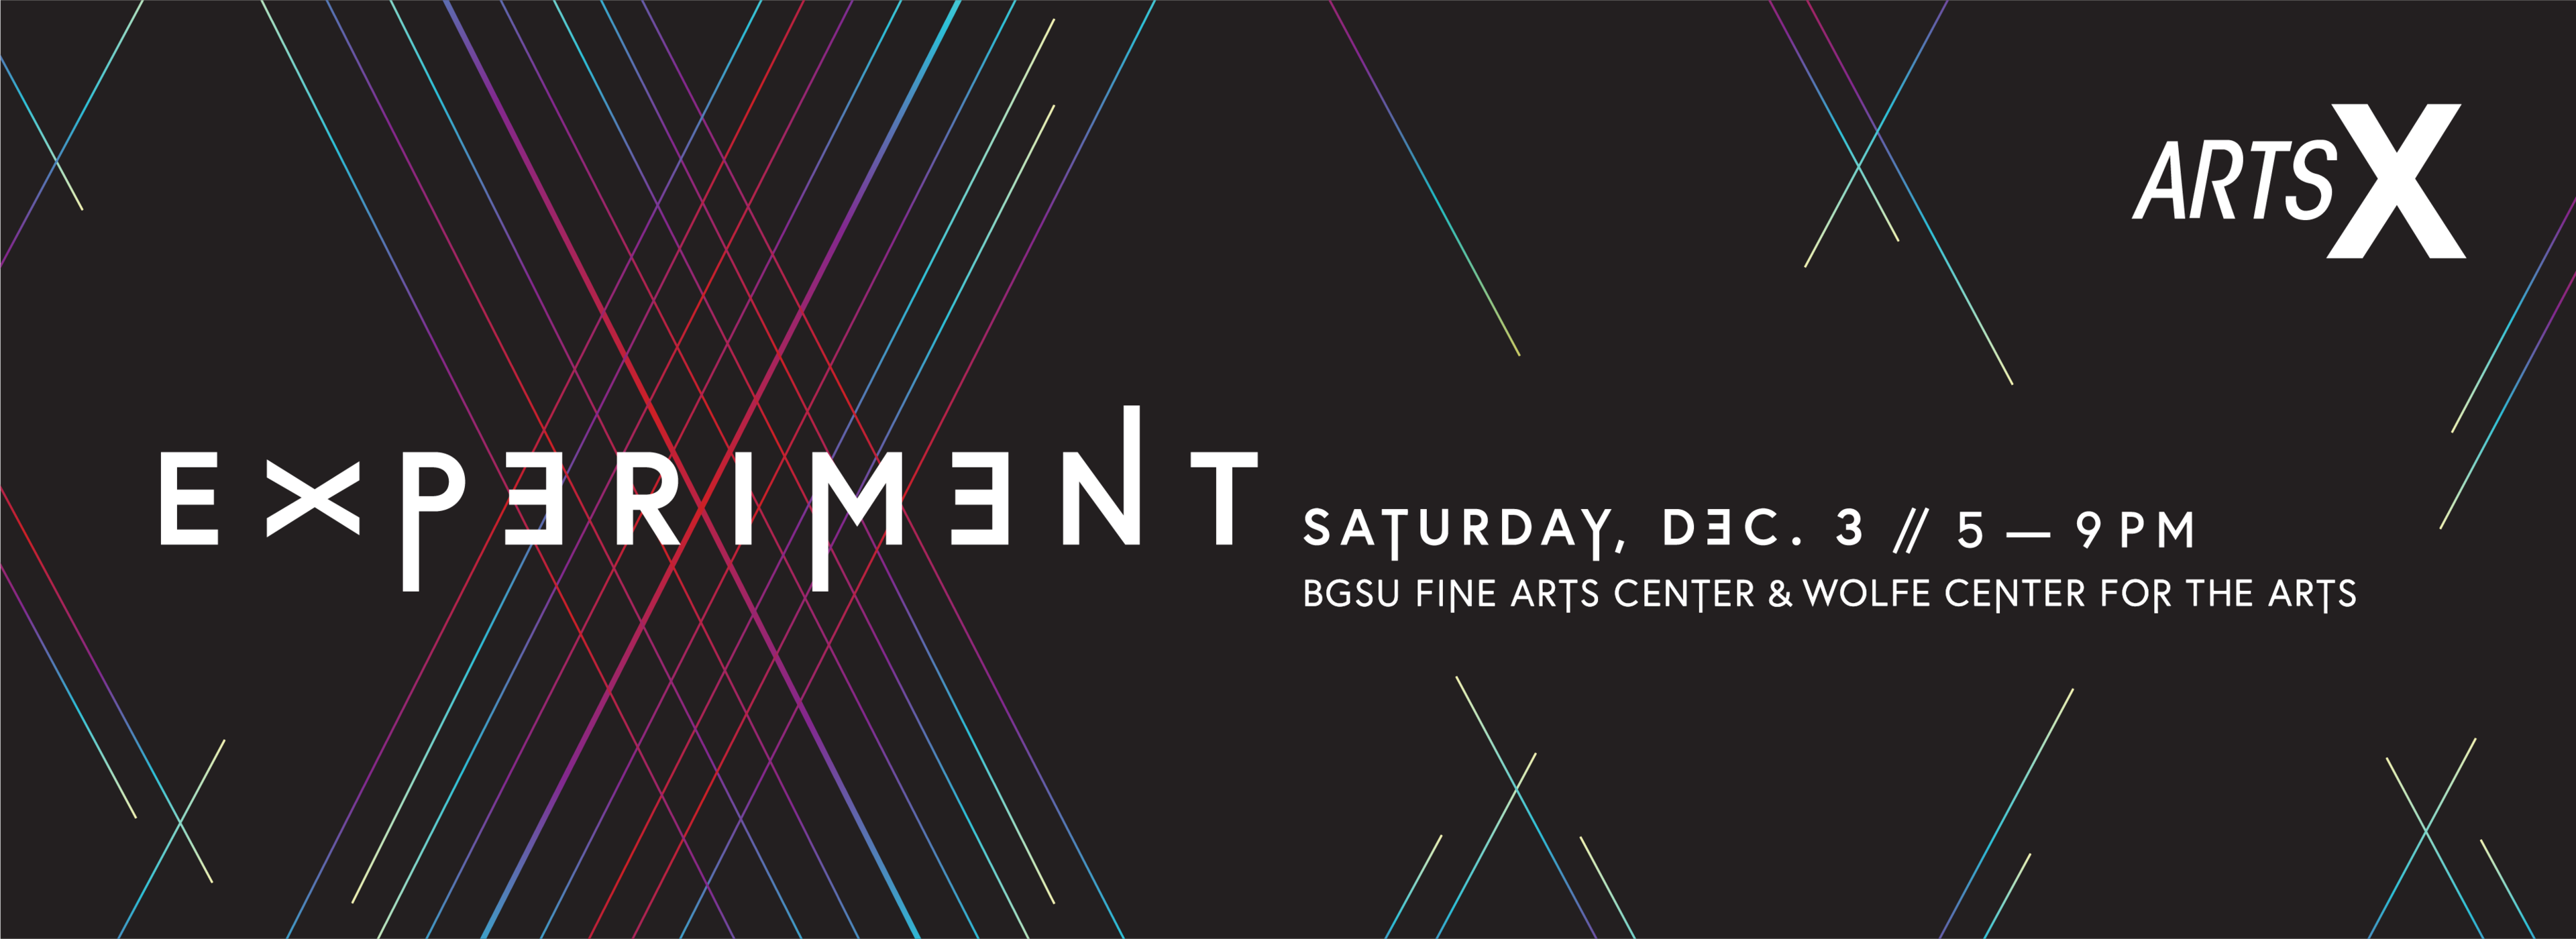 EXPERIMENT | Arts X | Saturday, Dec. 3 5-9 PM | BGSU Fine Arts Center & Wolfe Center for the Arts